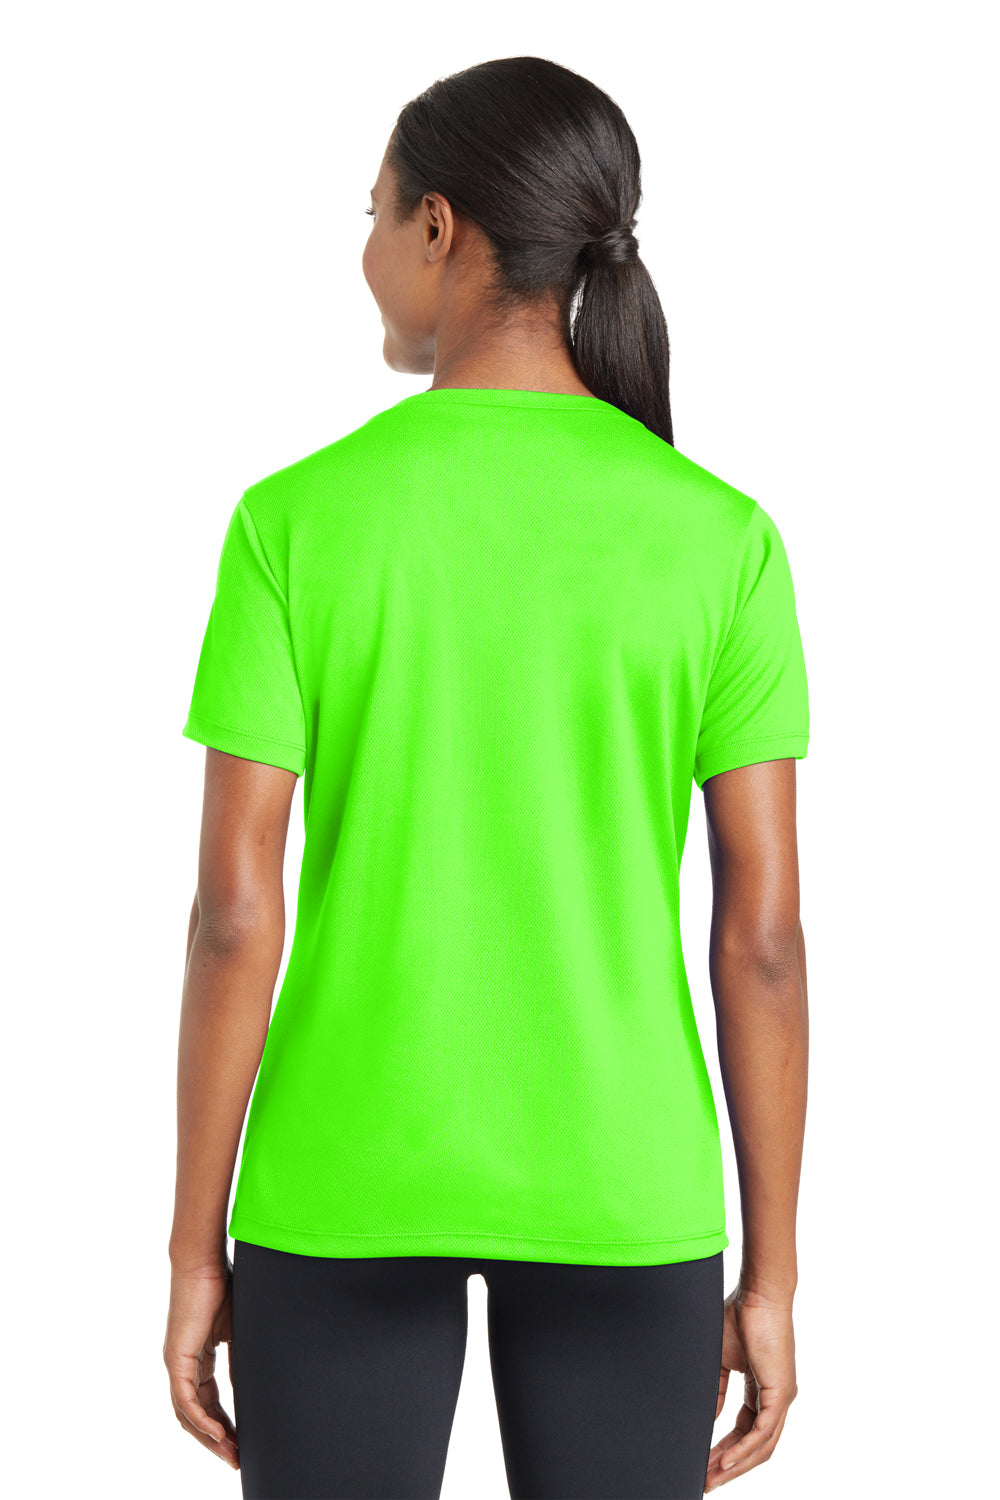 Sport-Tek LST340 Womens Neon Wicking T-Shirt Sleeve V-Neck Short RacerMesh Green Moisture —